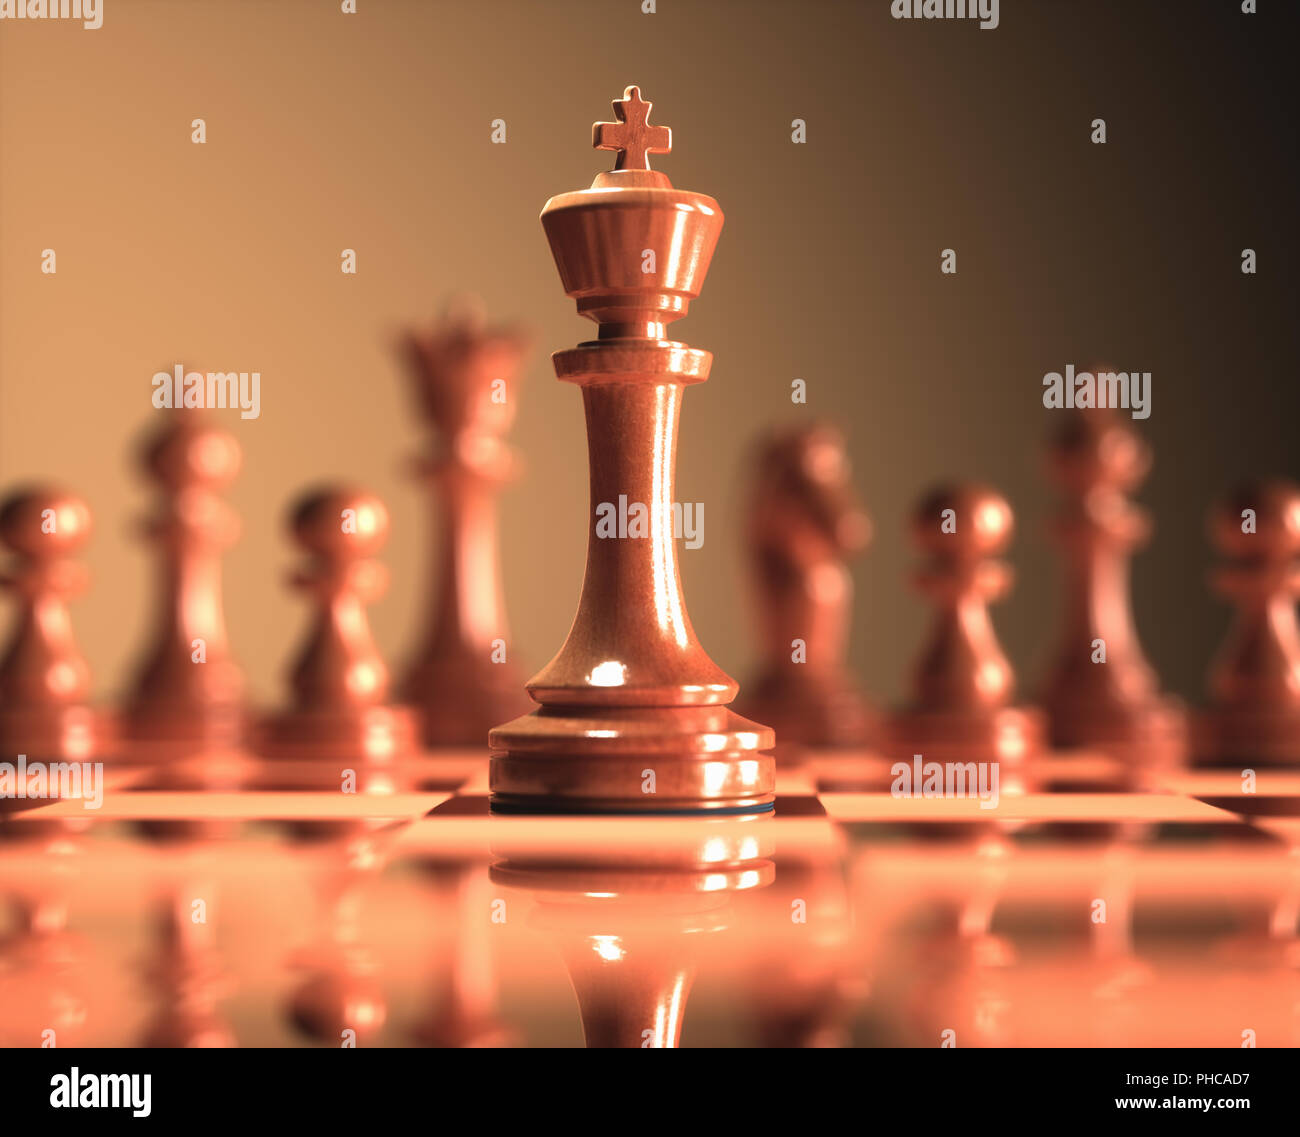 Le Roi à mettre en évidence. Pièces de jeu d'échecs, de droit avec une faible profondeur de champ. Banque D'Images